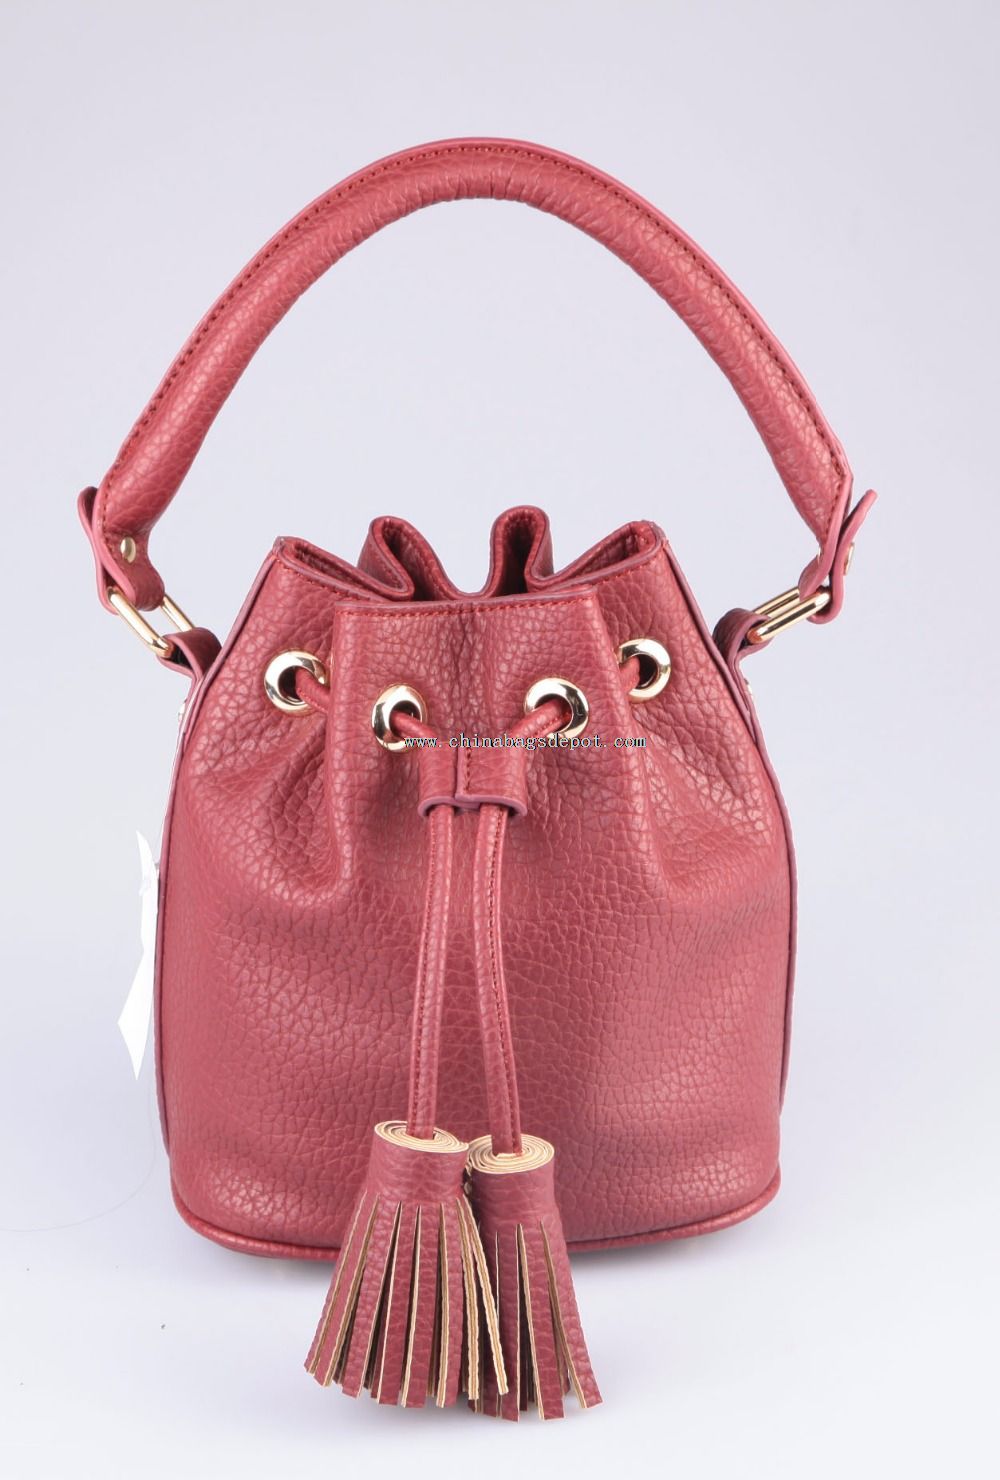 Handtaschen-Design für die Dame